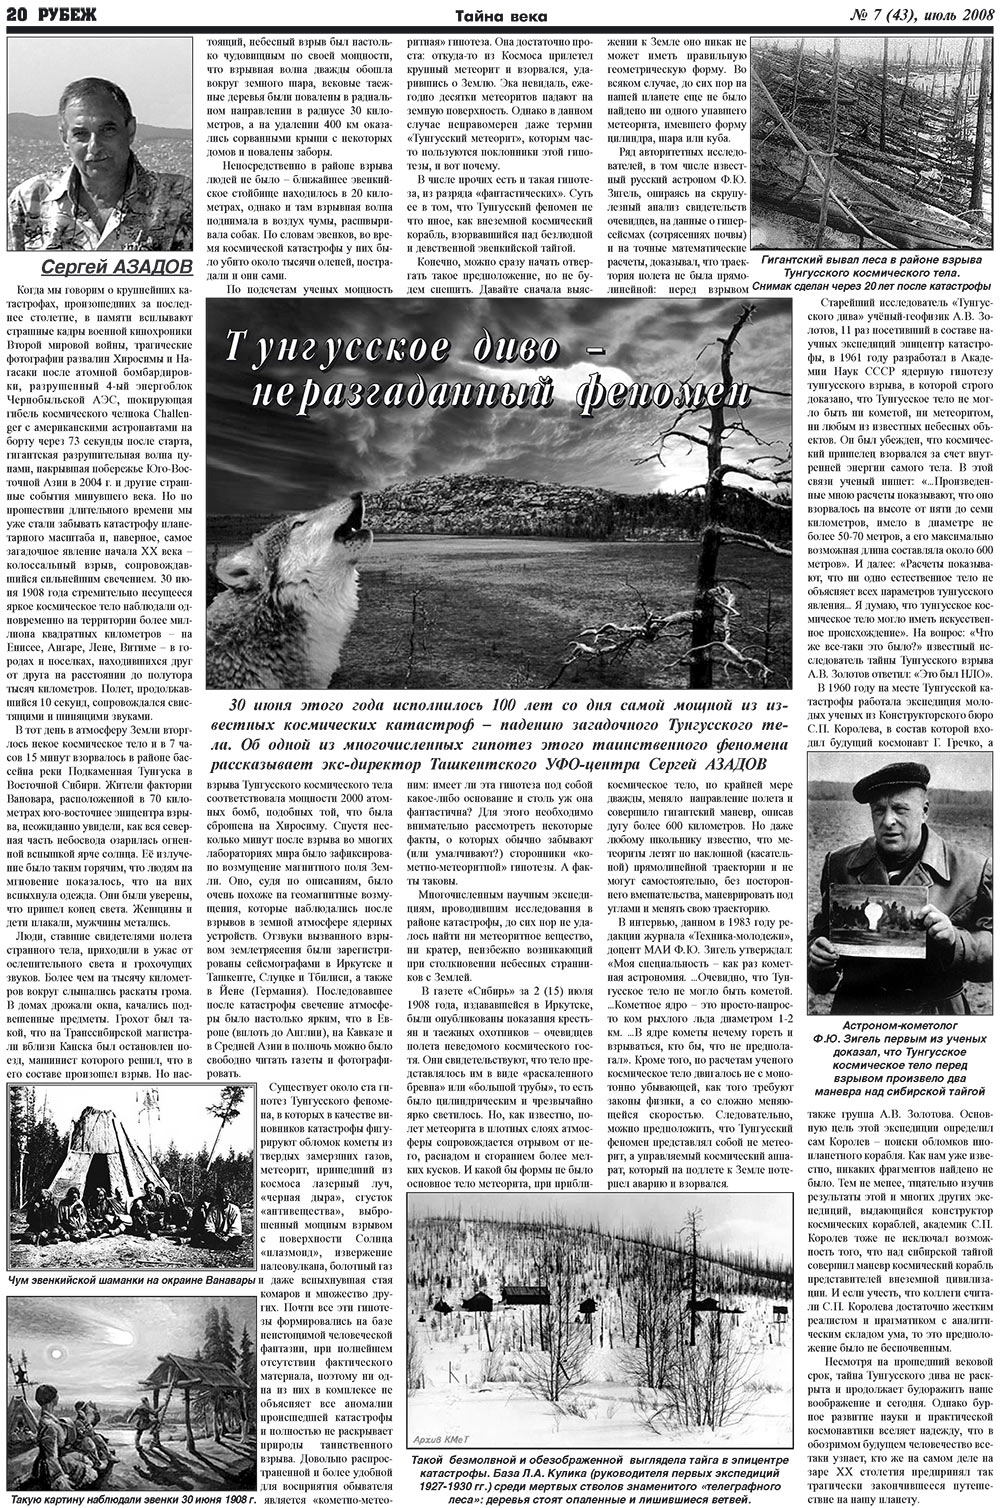 Рубеж (газета). 2008 год, номер 7, стр. 20